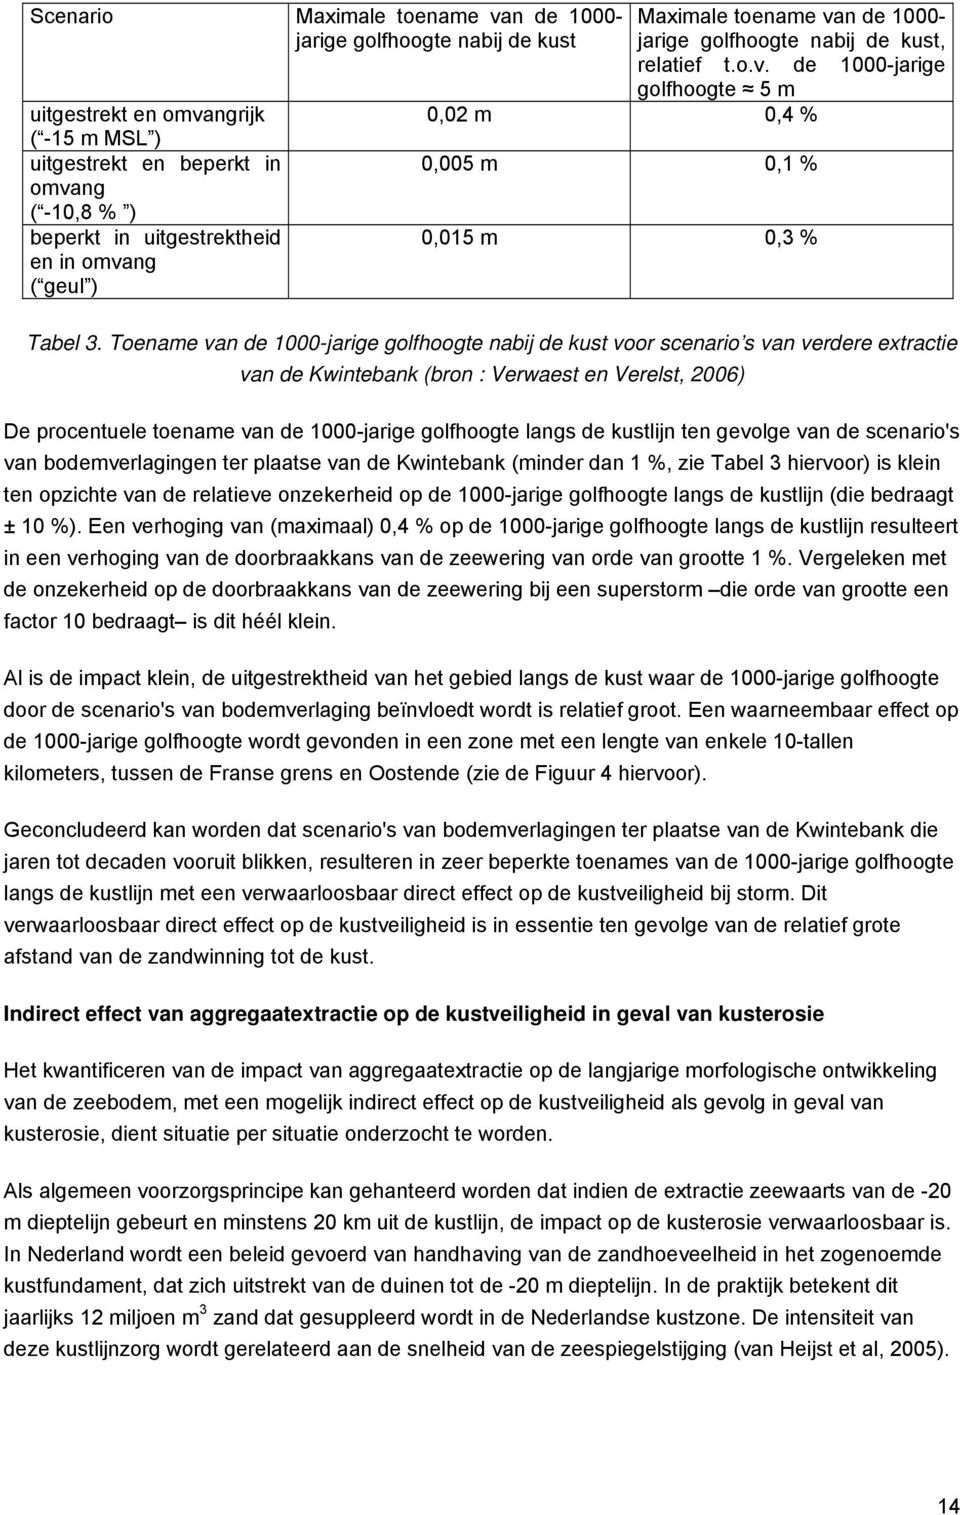 Toename van de 1000-jarige golfhoogte nabij de kust voor scenario s van verdere extractie van de Kwintebank (bron : Verwaest en Verelst, 2006) De procentuele toename van de 1000-jarige golfhoogte